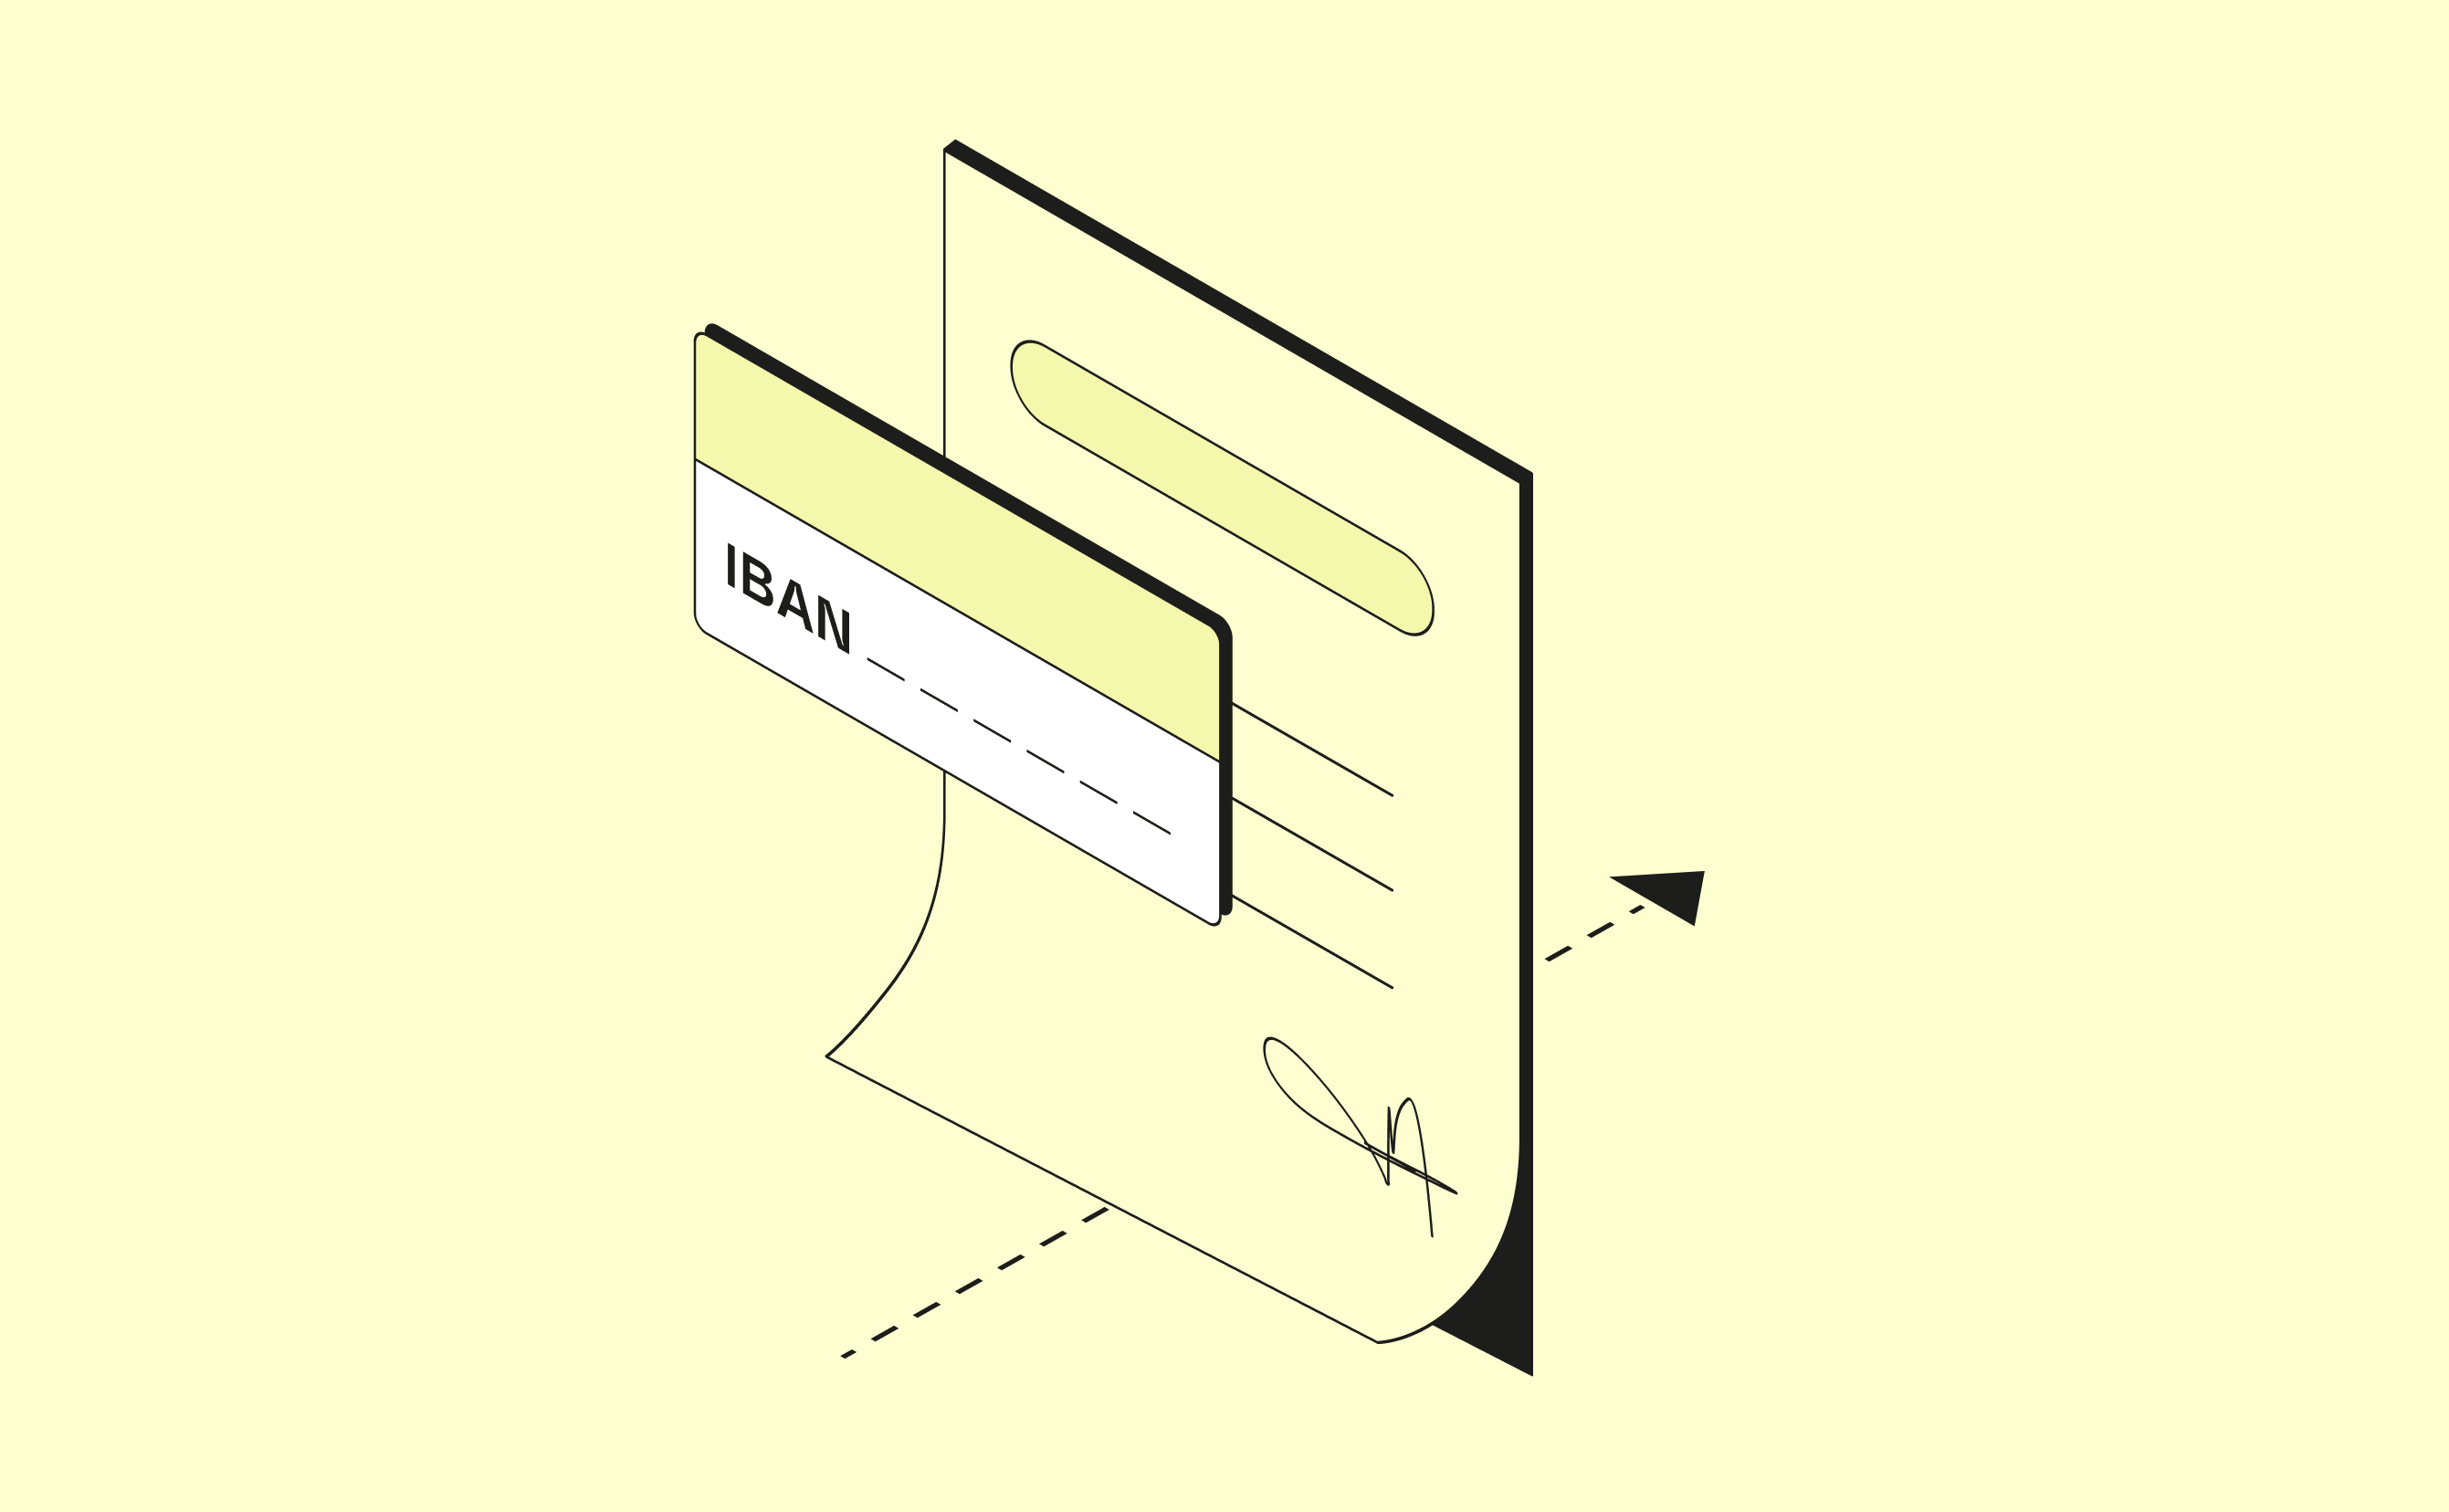 Couverture de courrier Prélèvement automatique IBAN moutarde